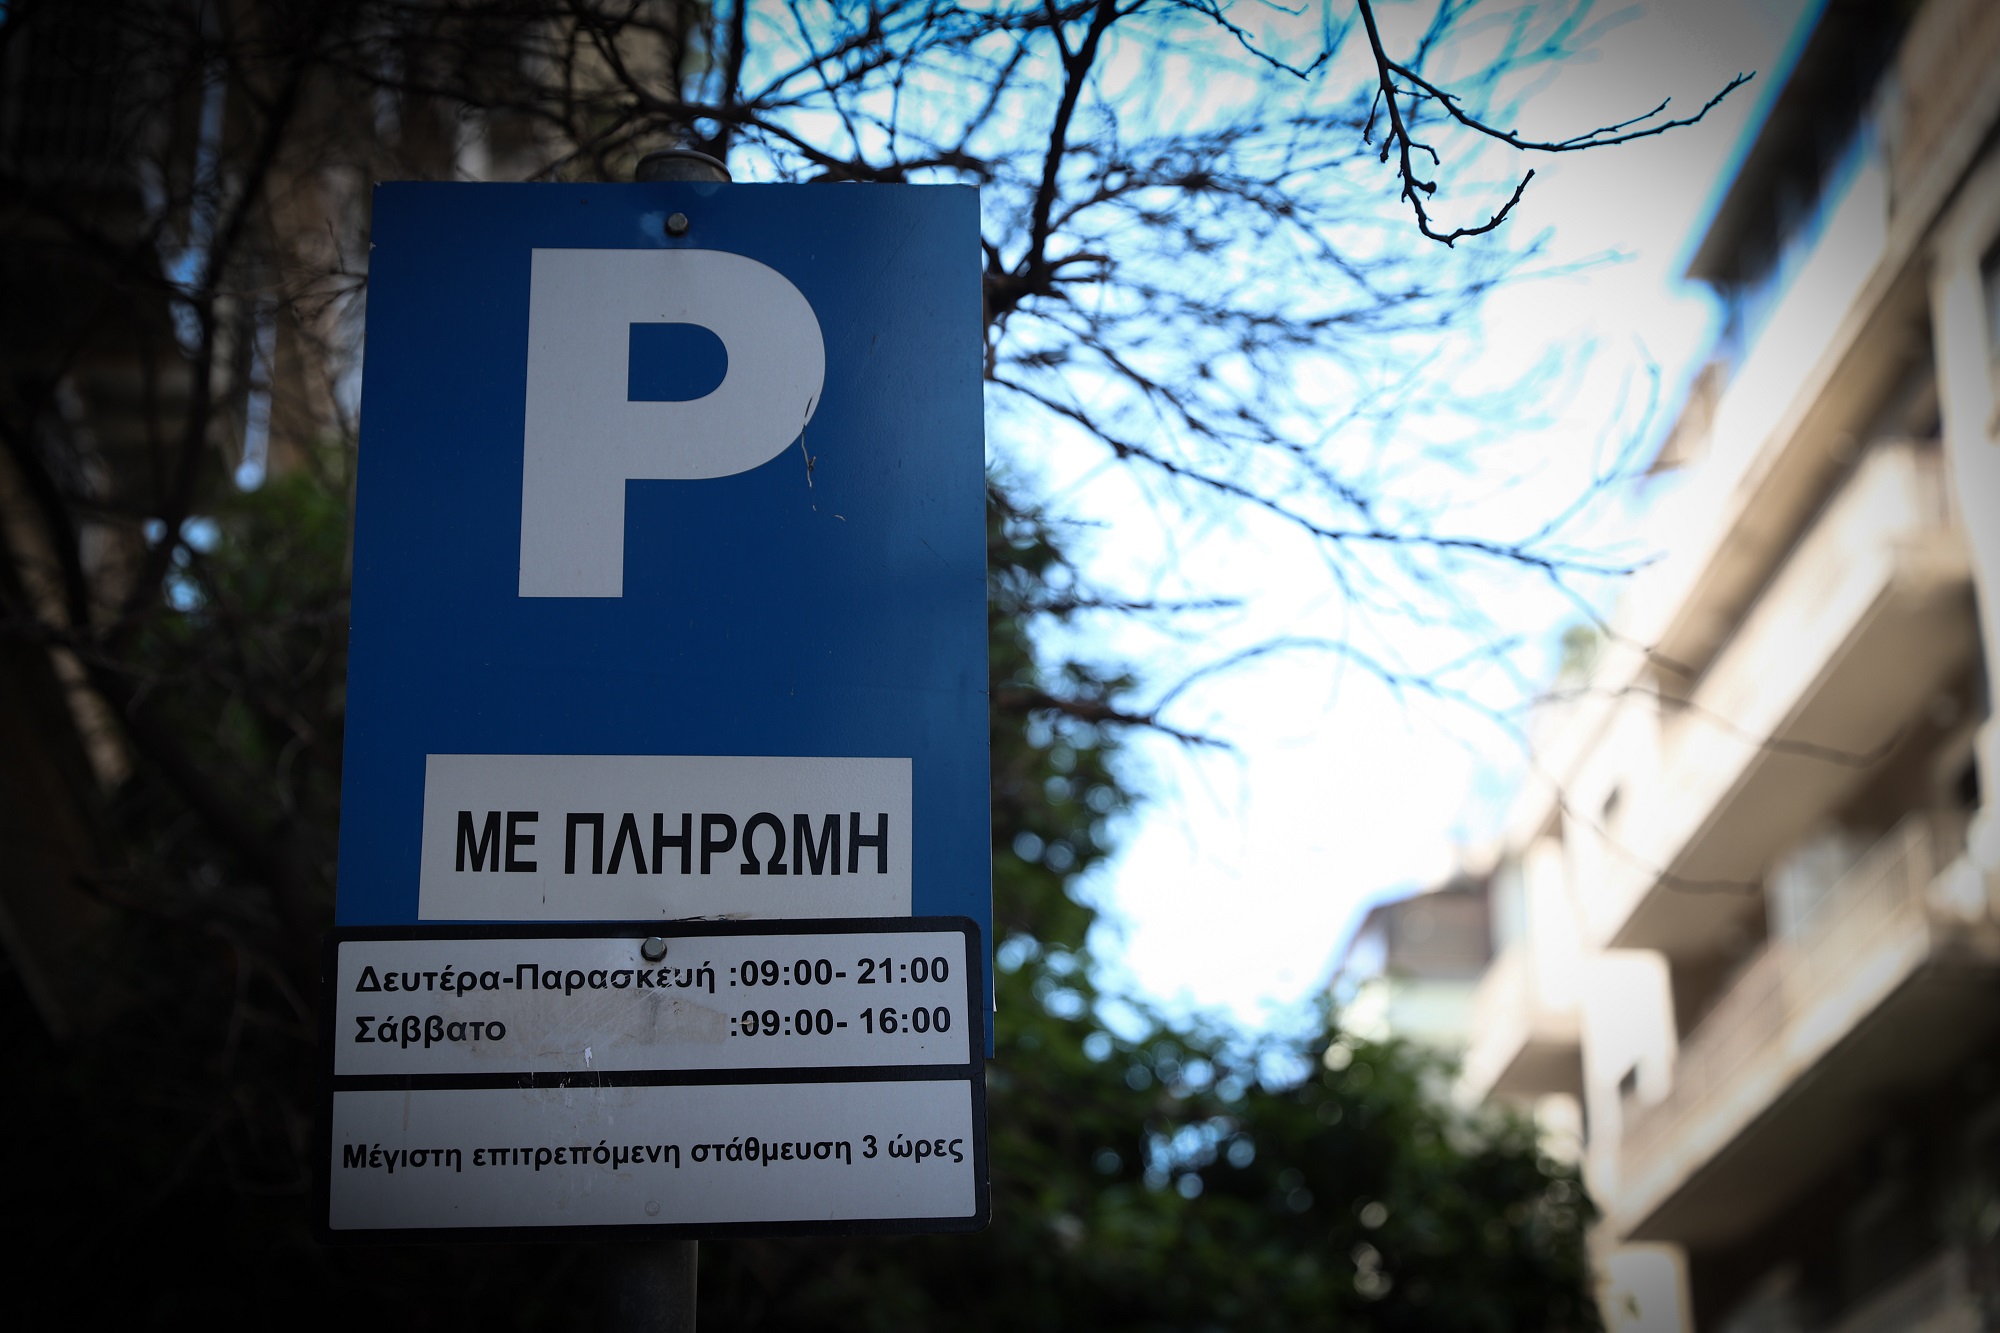 Δήμος Αθηναίων: Από 21/12  επιστρέφονται πινακίδες Ι.Χ. και δικύκλων – Εξαιρούνται όσες αφαιρέθηκαν για στάθμευση σε ράμπες ΑμεΑ